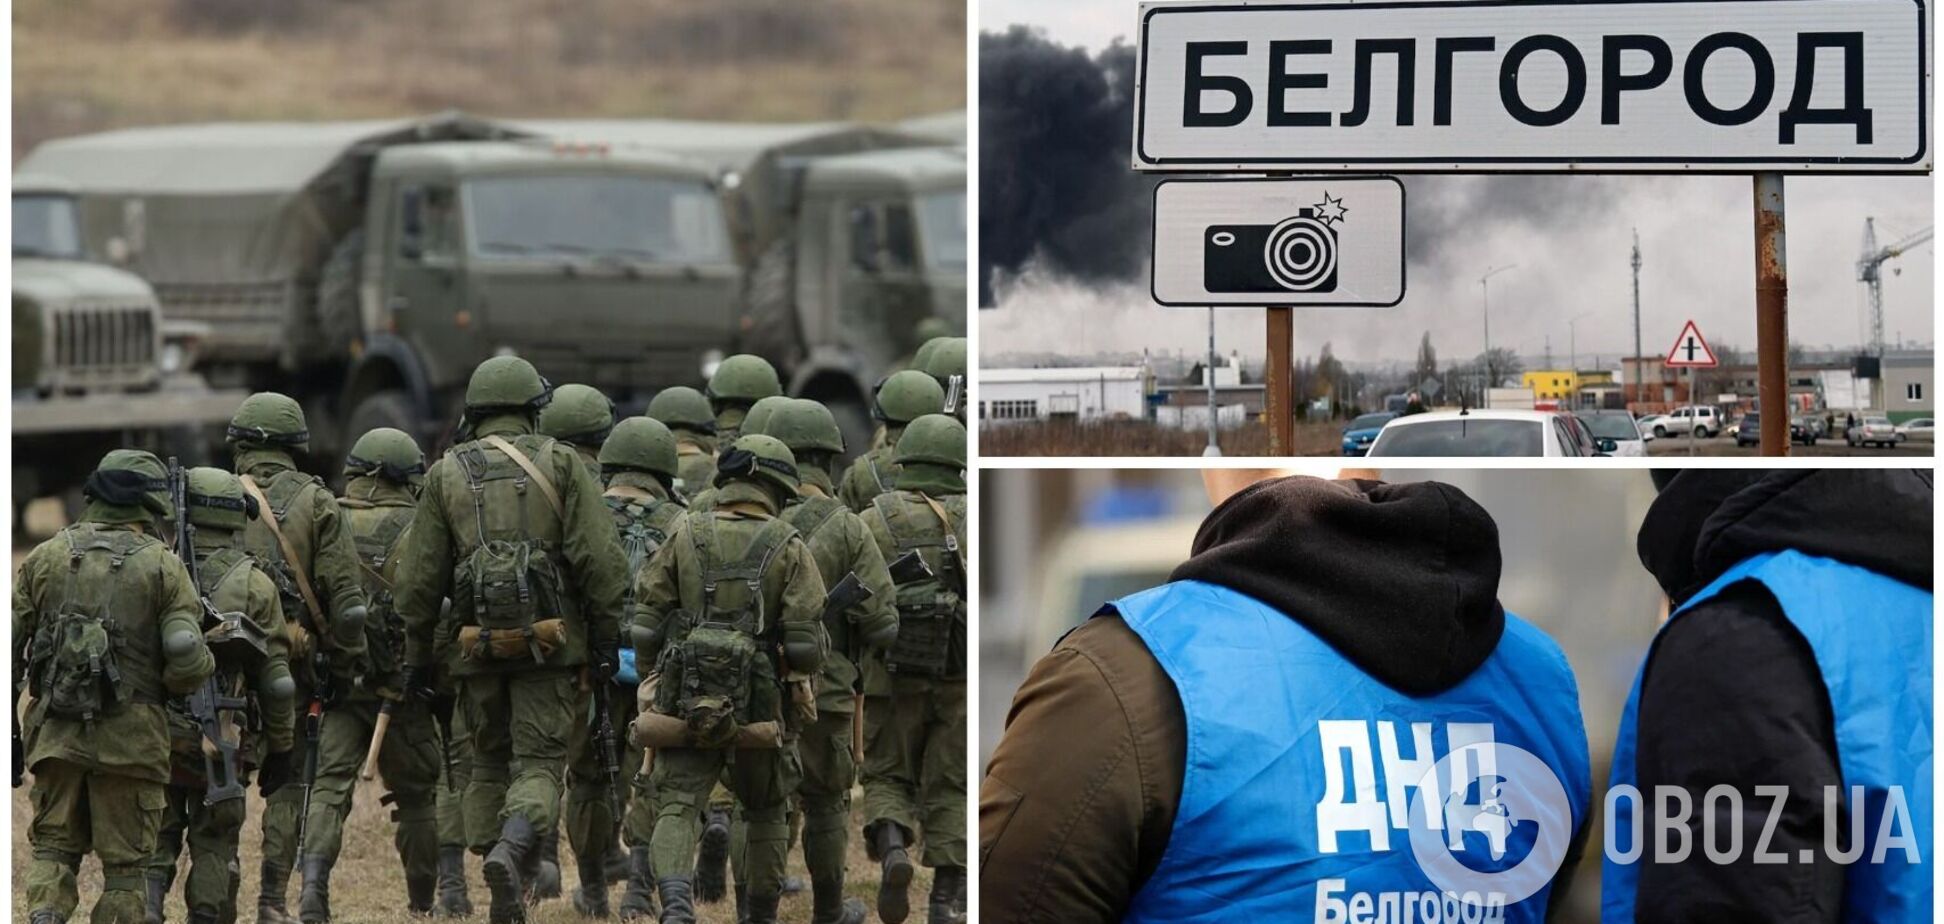 У Бєлгороді намагаються 'зам'яти' інформацію про конфлікти між військовими та місцевим населенням